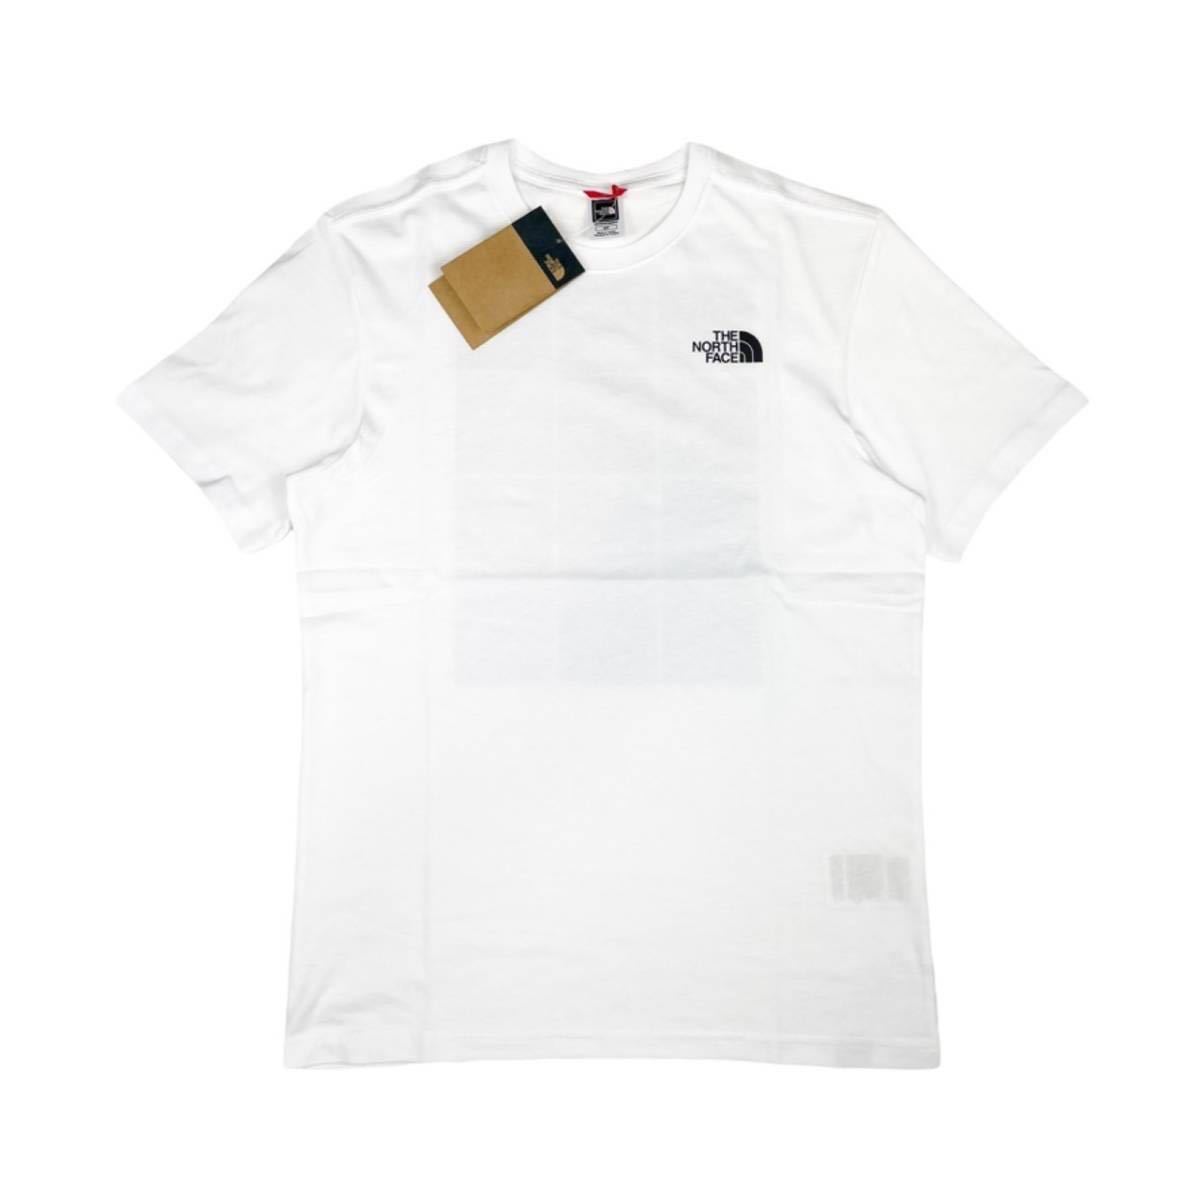 ザ ノースフェイス Tシャツ 半袖 メンズ レディース NF0A82EW バックロゴ 白 Sサイズ THE NORTH FACE S/S MOUNTAIN REPEAT LOGO TEE 新品